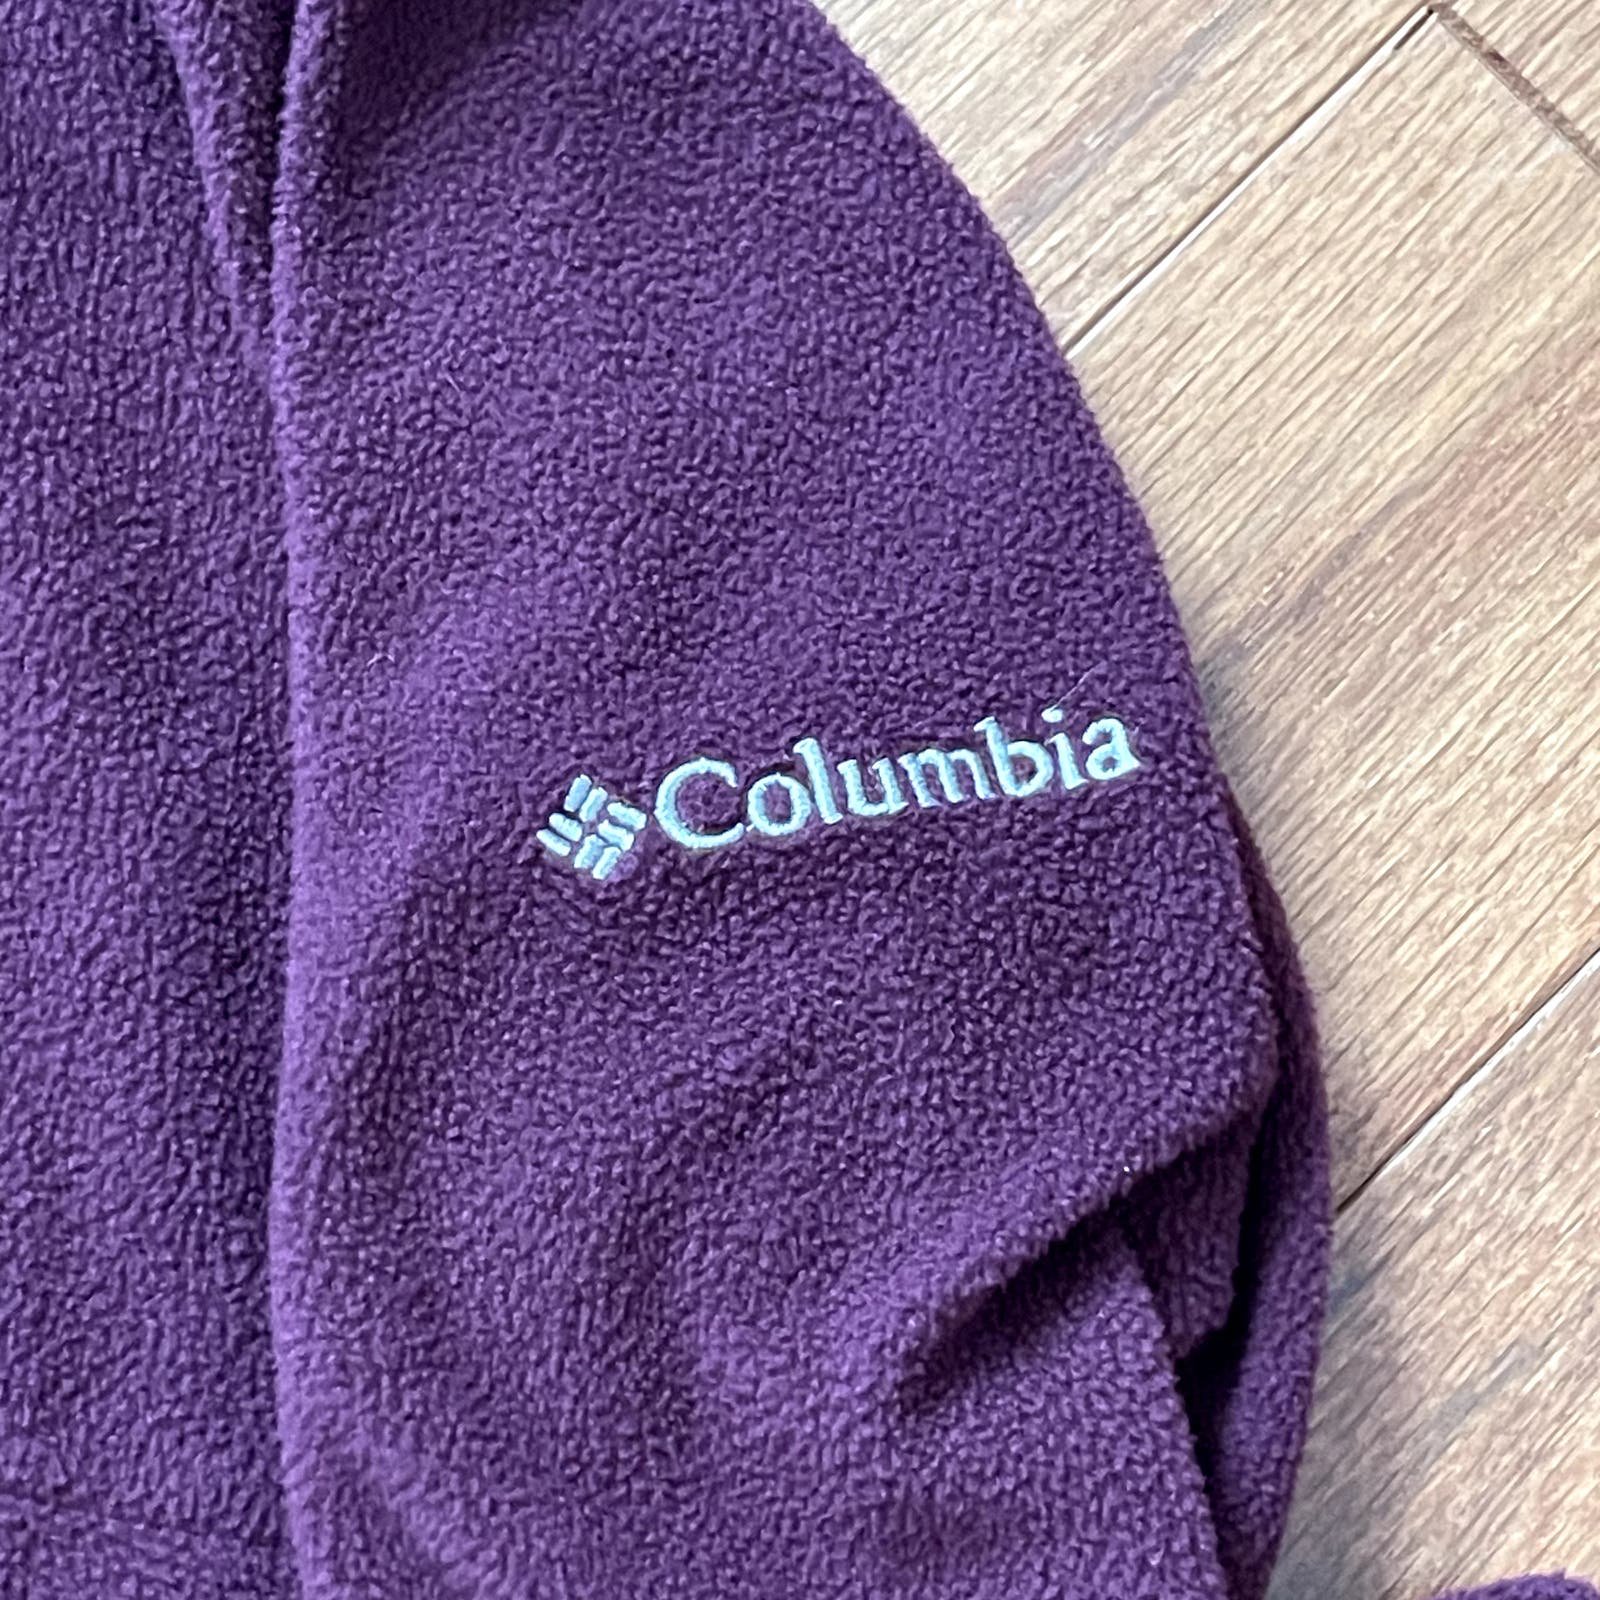 Custom Columbia Purple Full Zip Fleece Jacket Size Large p90xEW8sk on sale